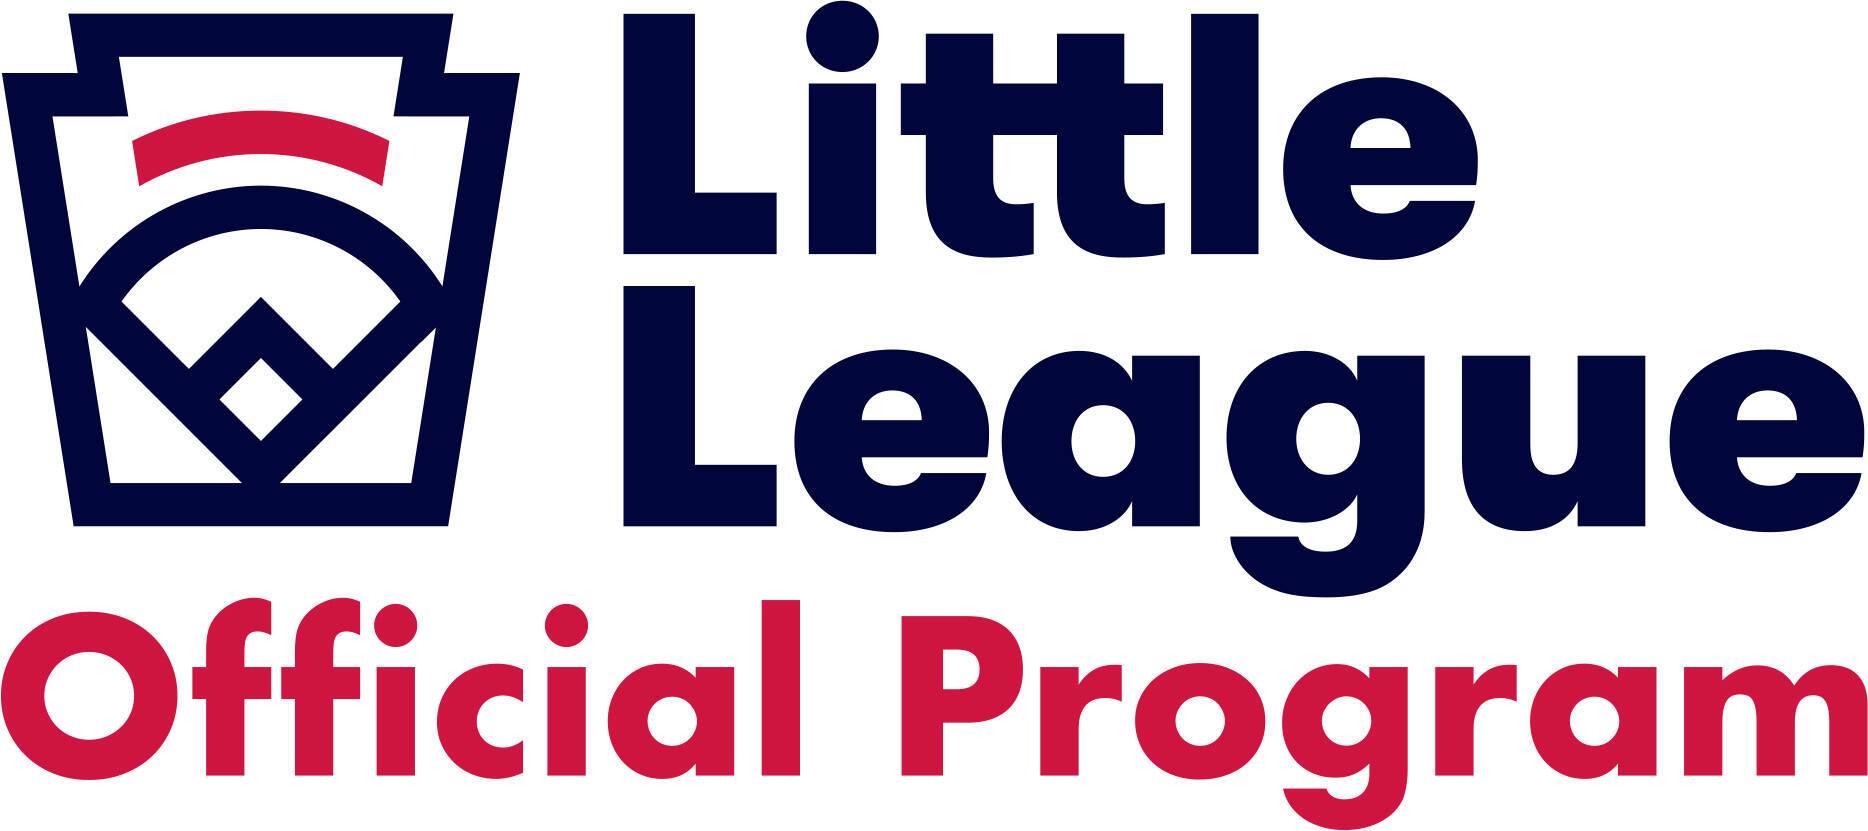 Little League International